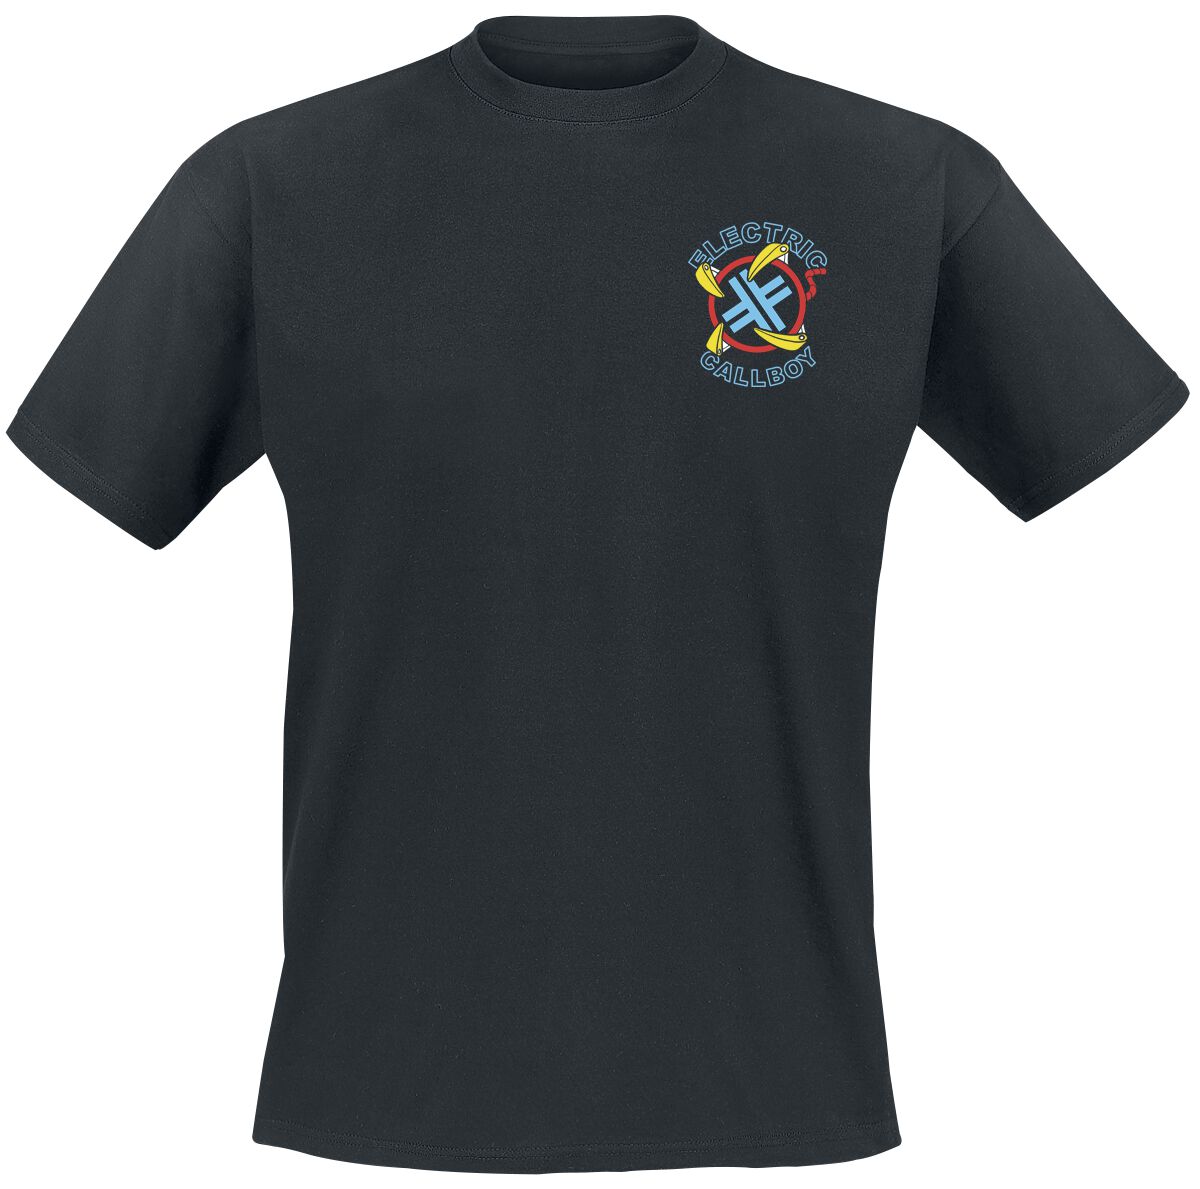 Electric Callboy T-Shirt - Let`s Play - S bis 3XL - für Männer - Größe XL - schwarz  - Lizenziertes Merchandise!